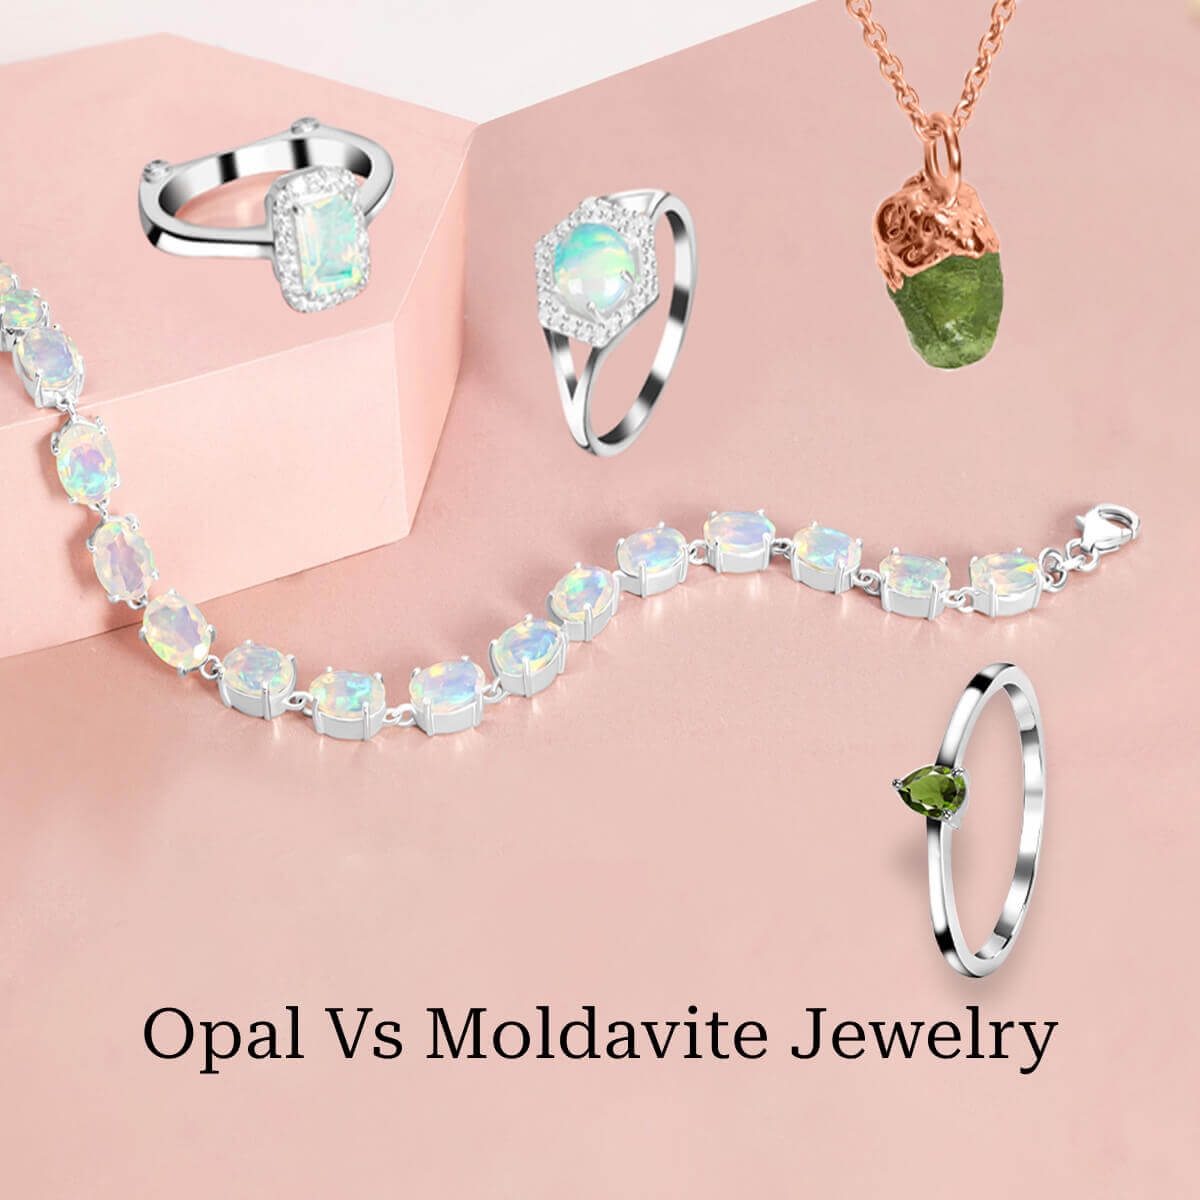 Opal Vs Moldavite Jewelry